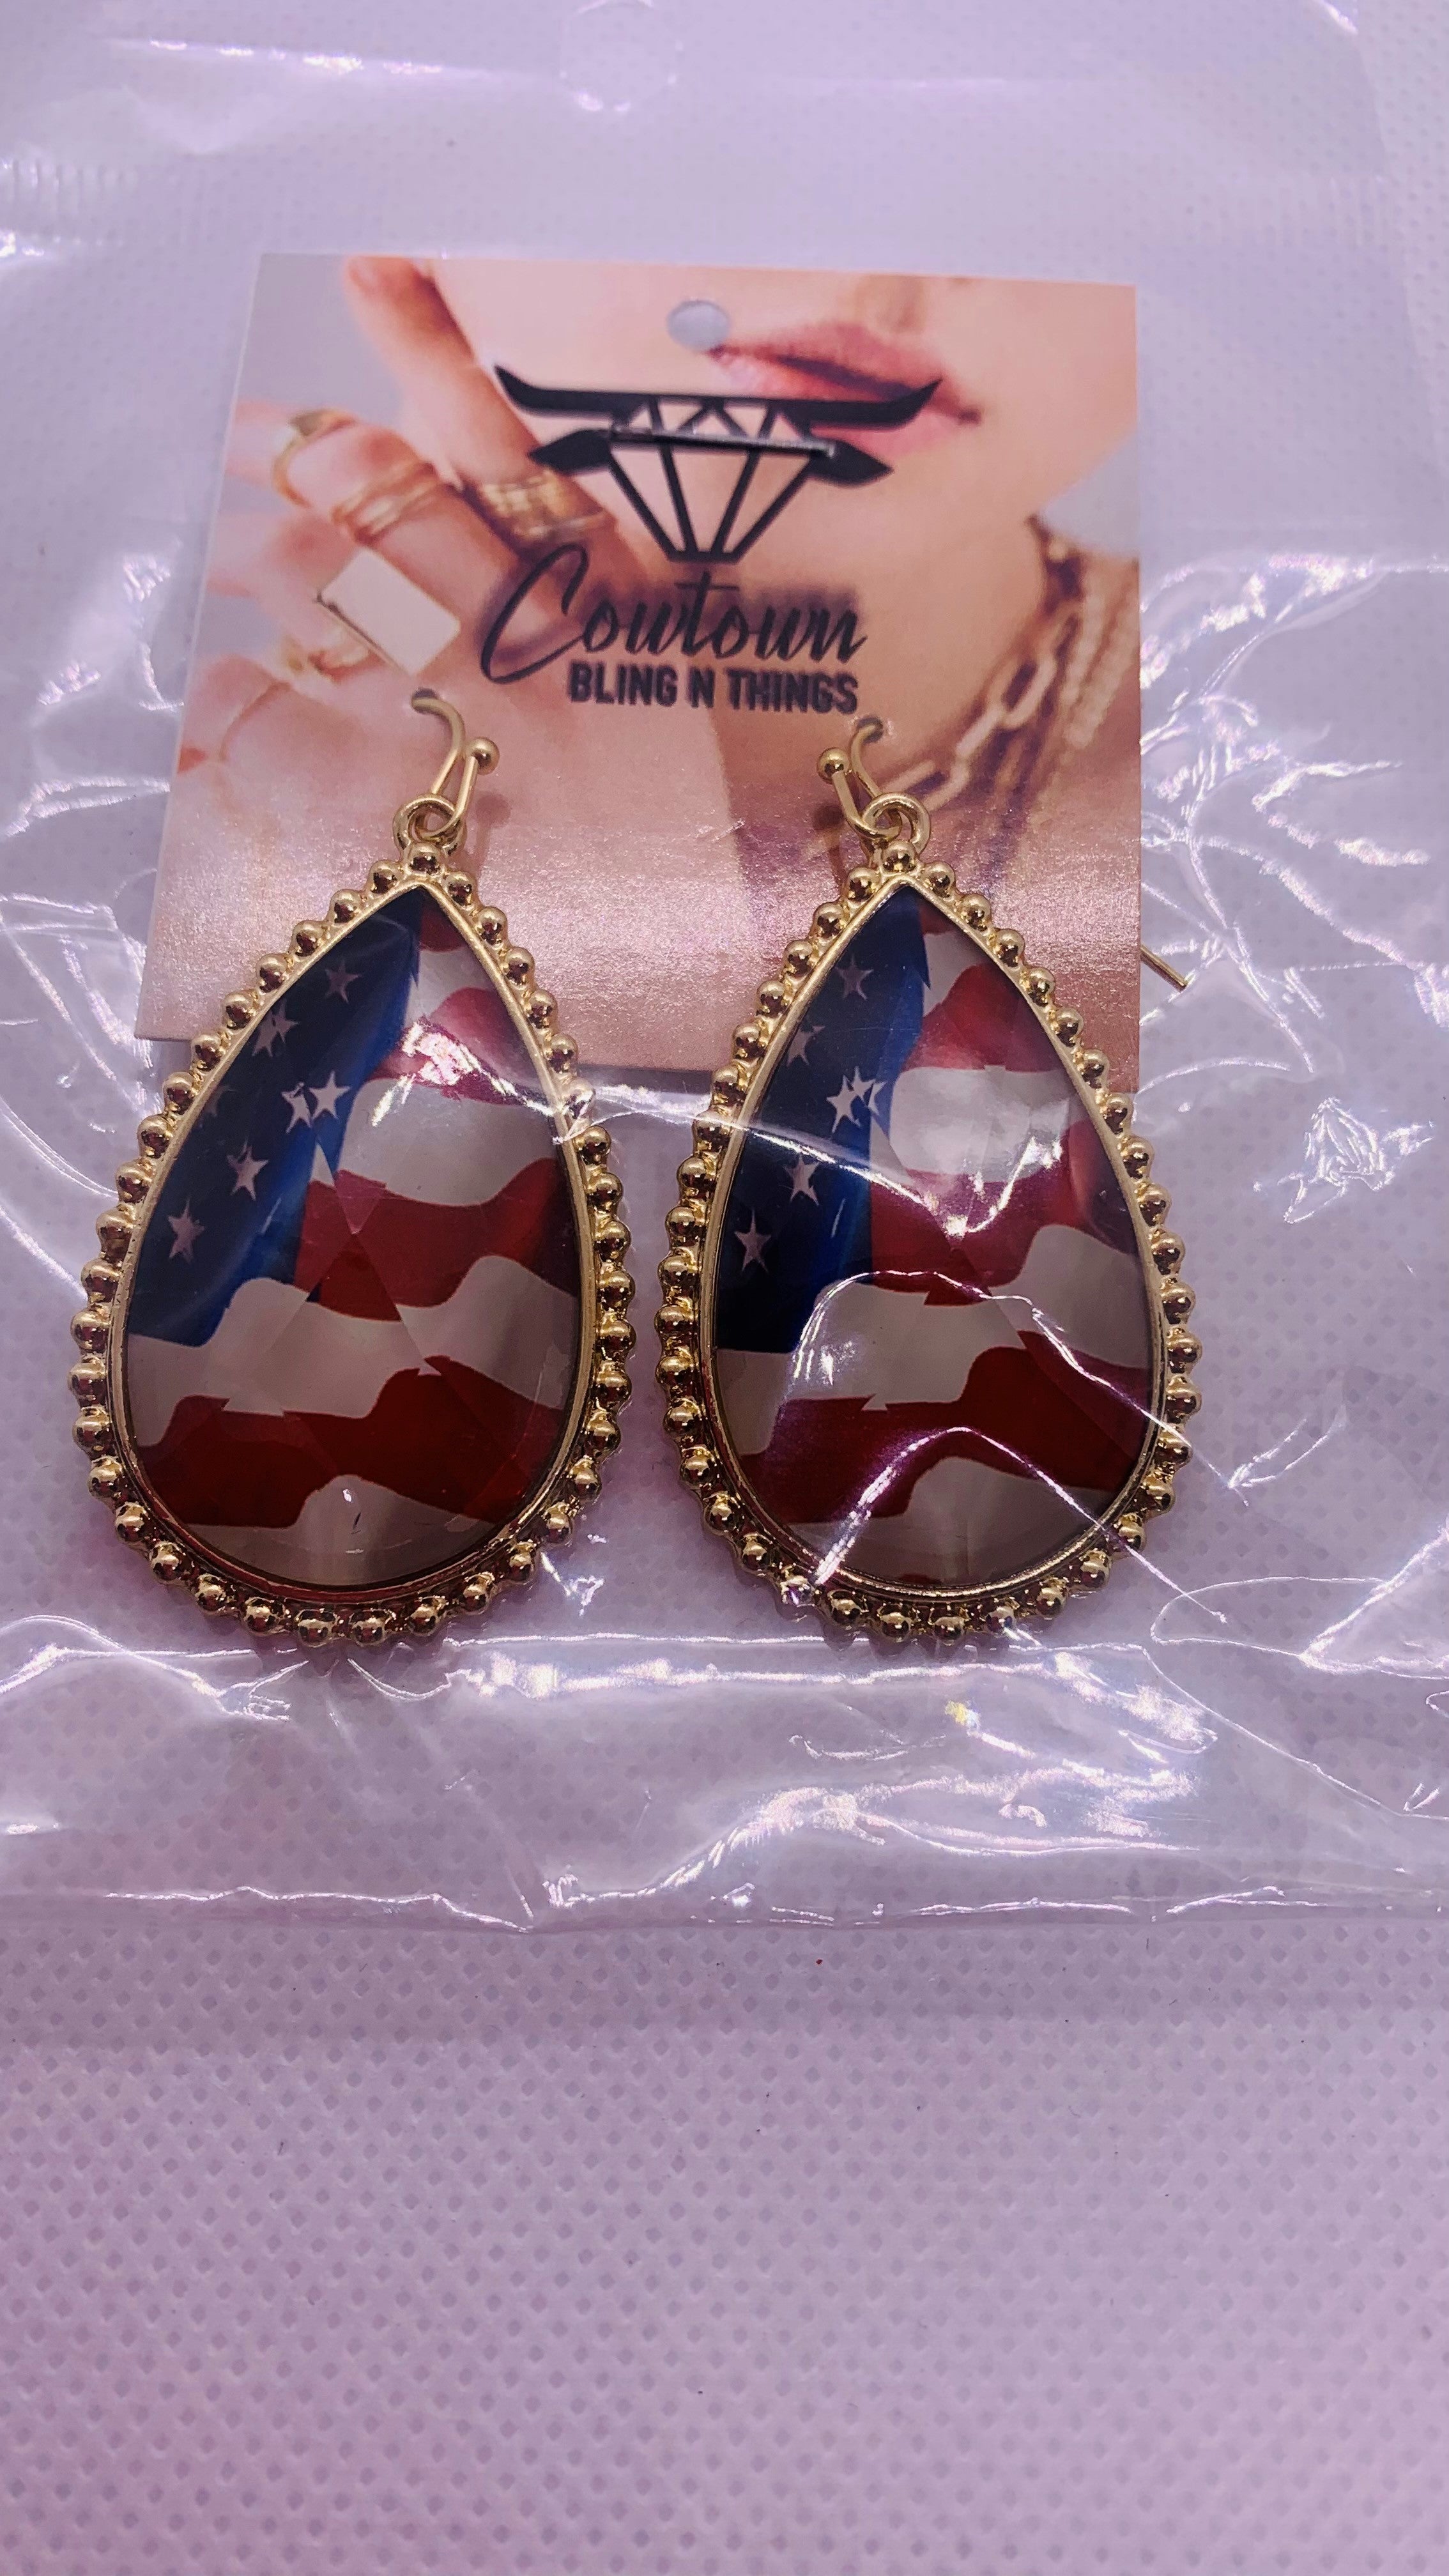 Patriotic American Flag  Earrings - Cowtown Bling N Things